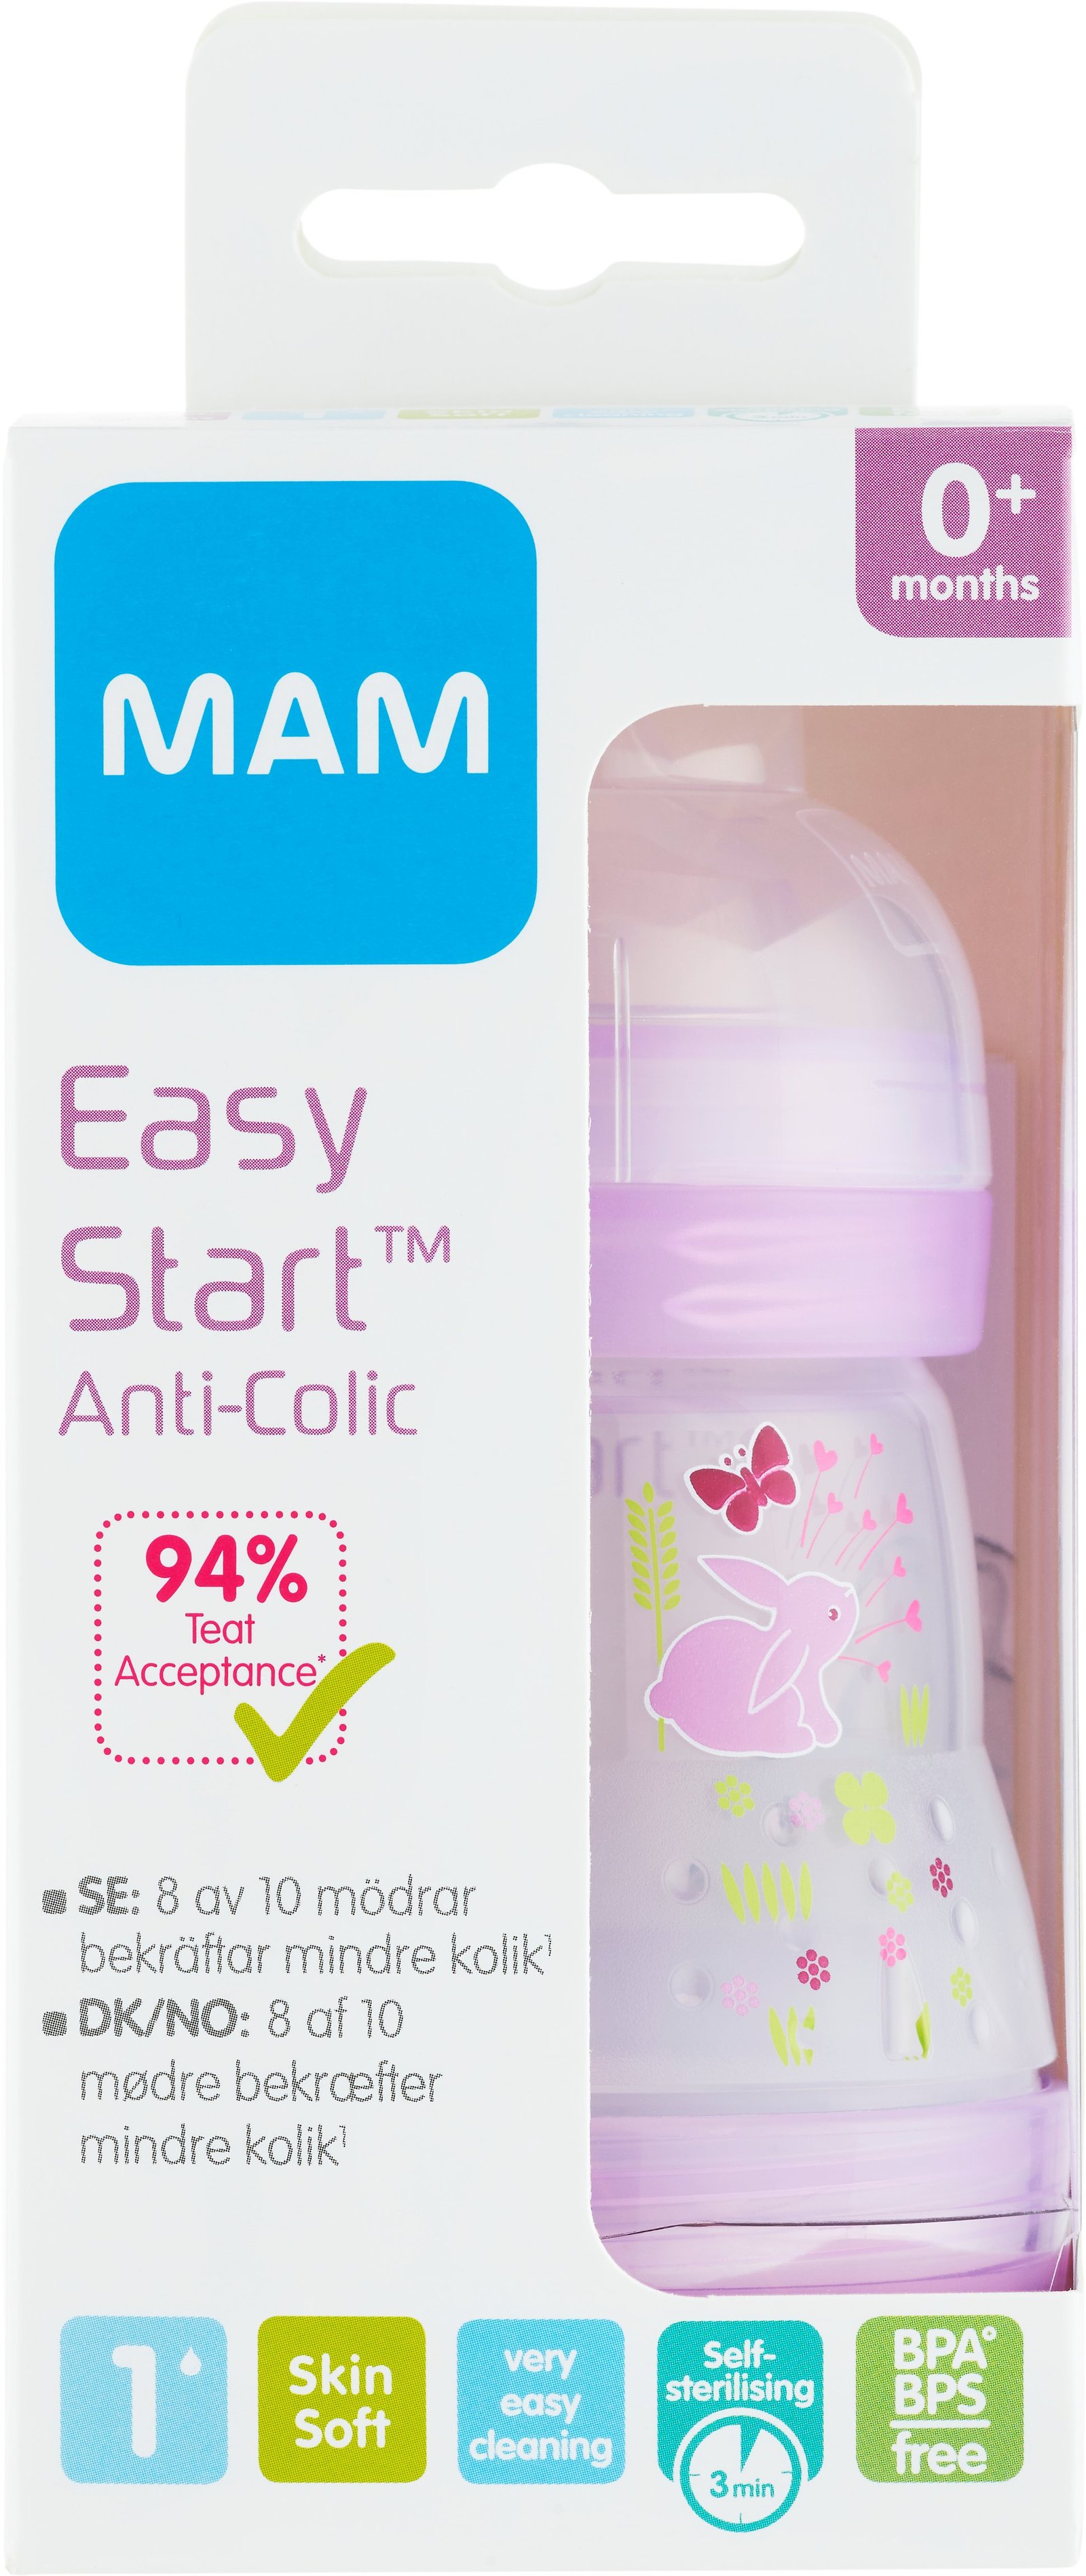 MAM Easy Start Anti-Colic Nappflaska 0+ Månader 160 ml - Olika färger